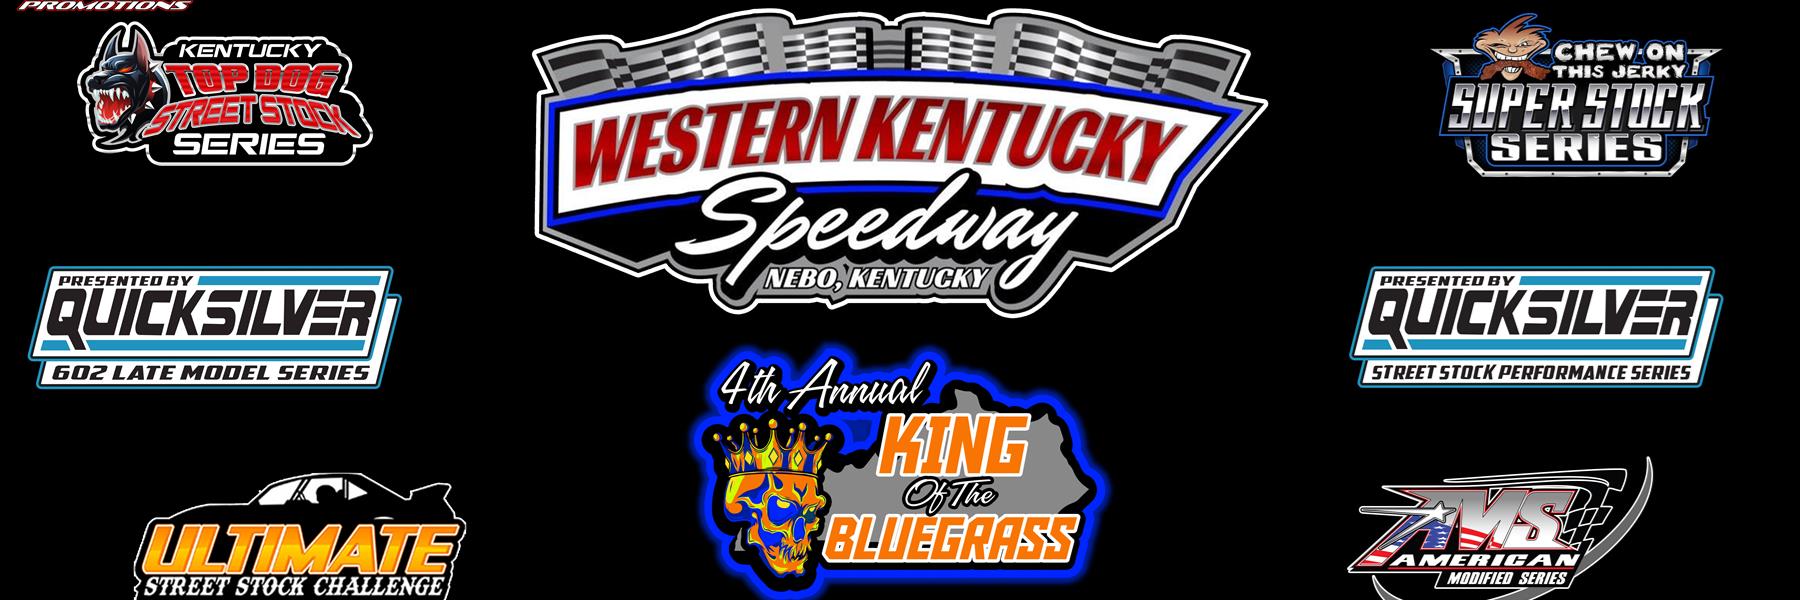 6/4/2022 - Western Kentucky Speedway